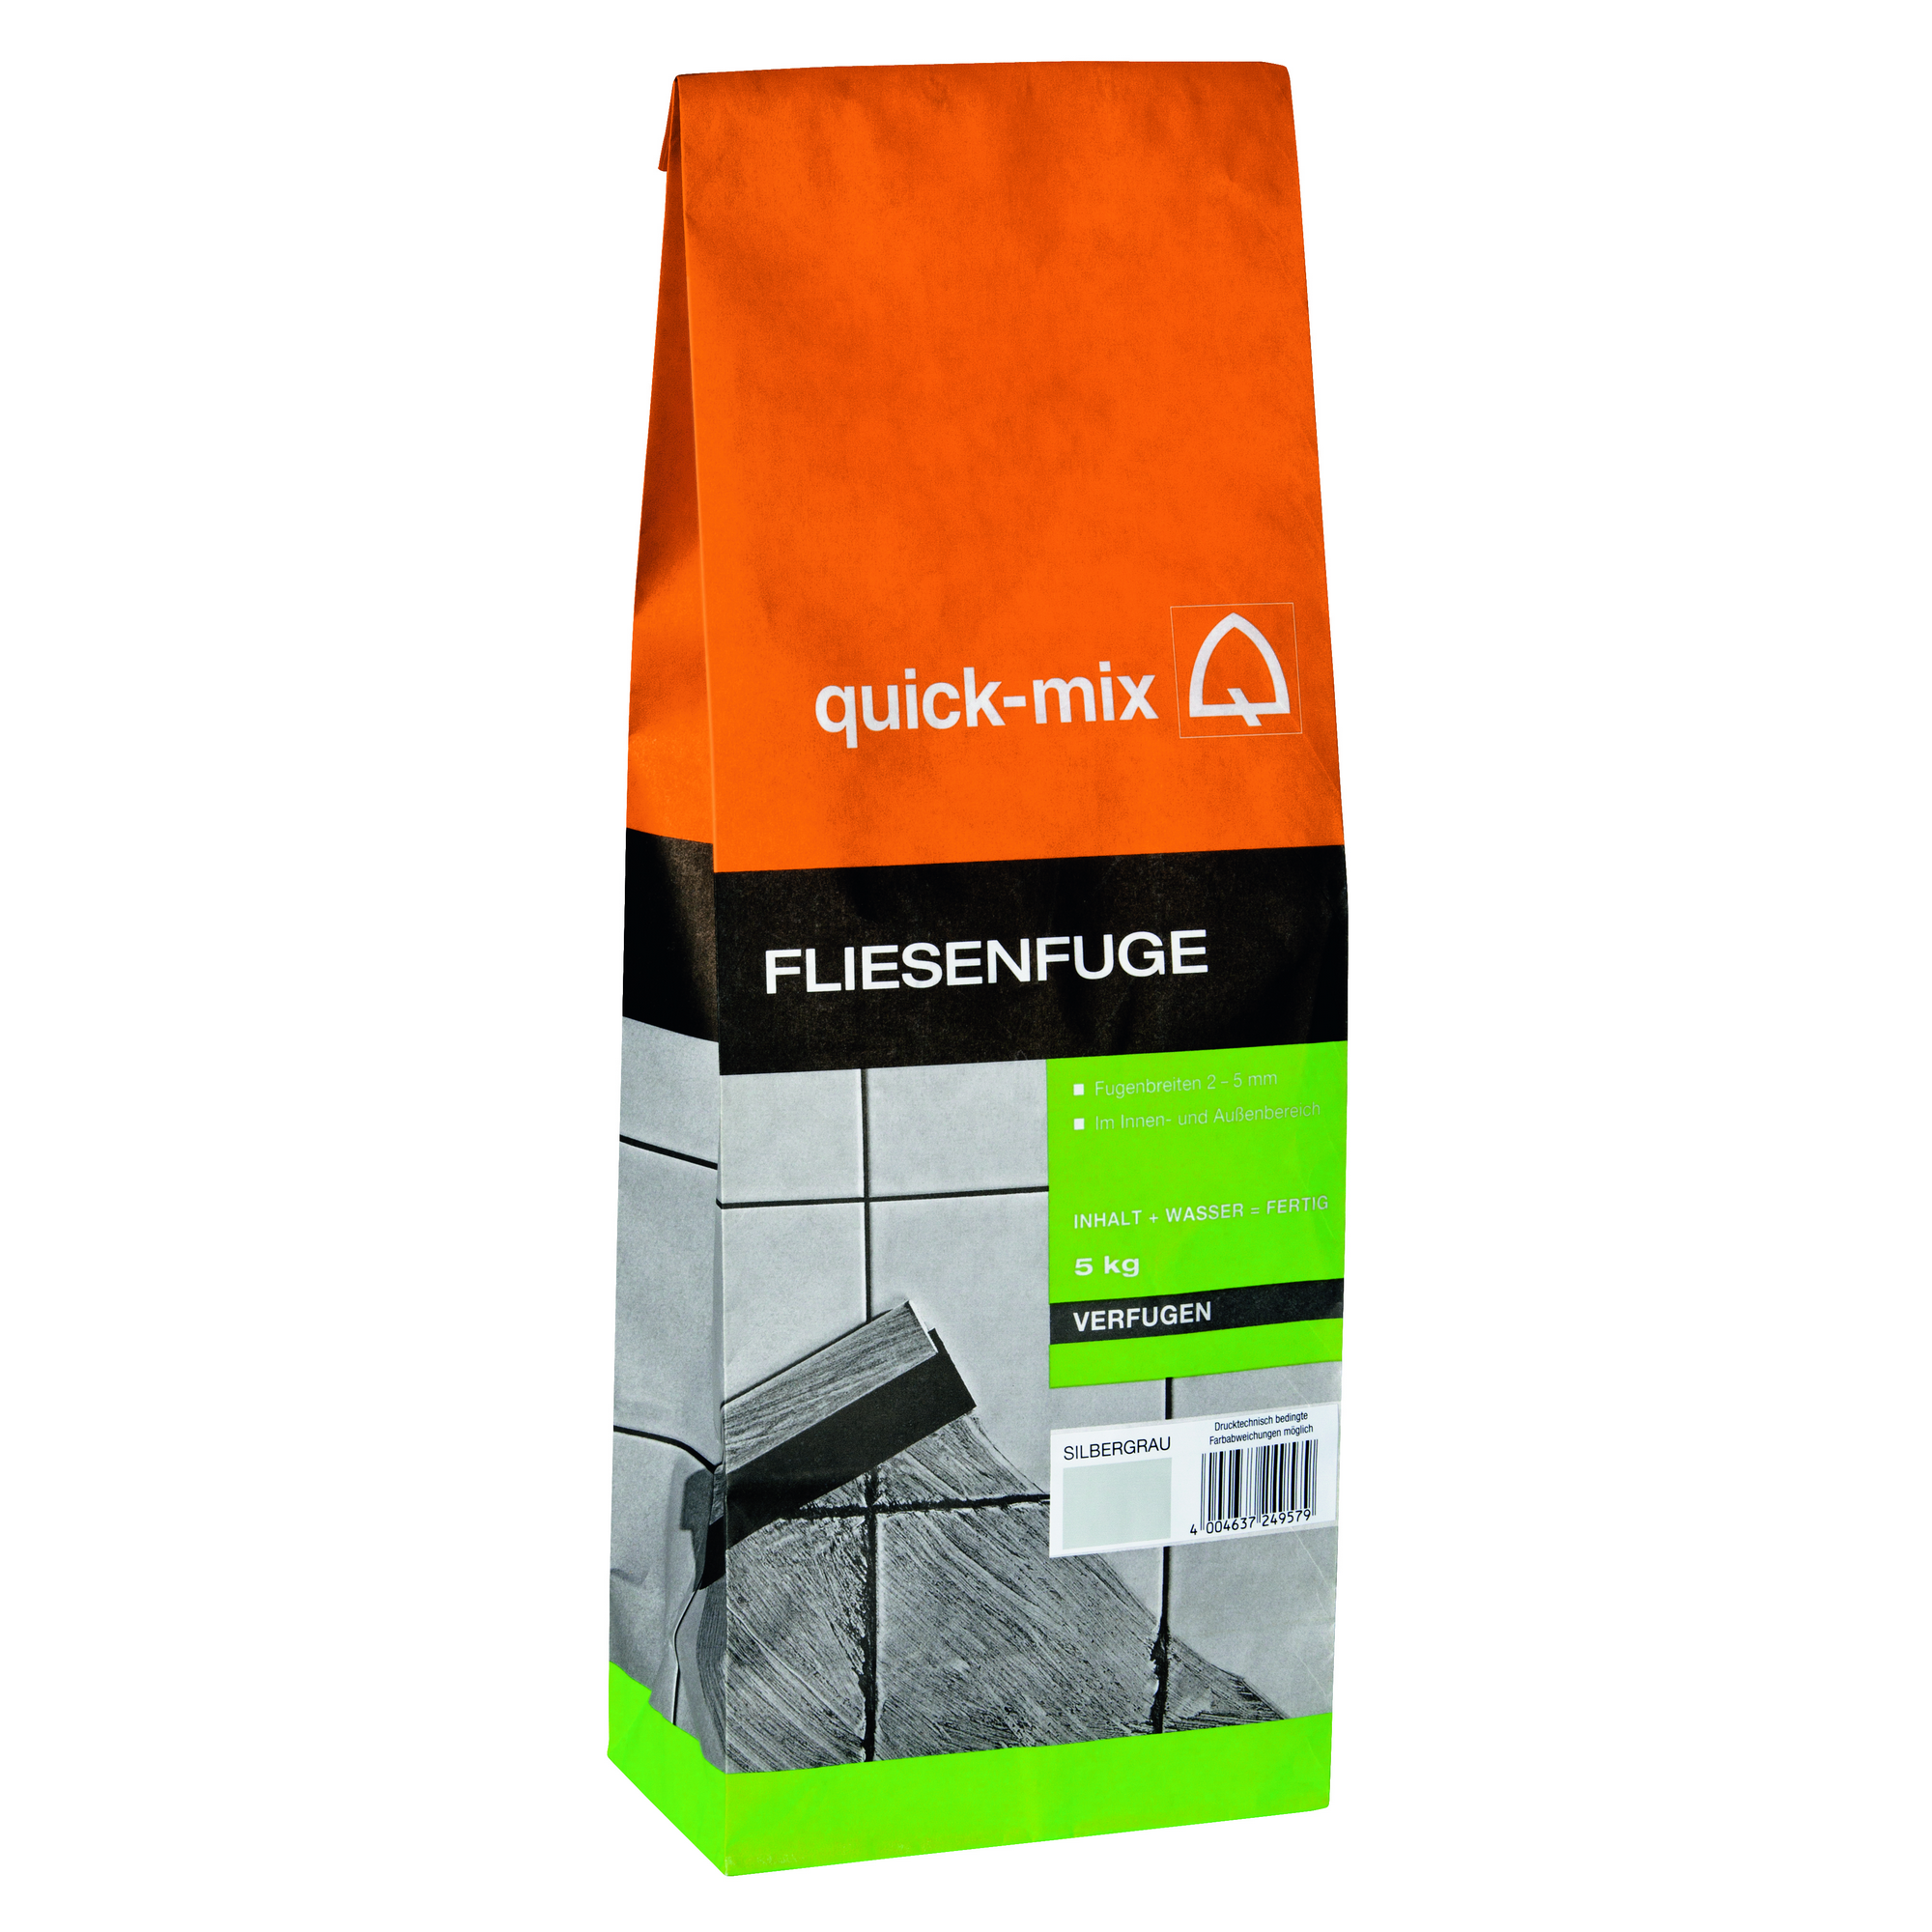 FF Fliesenfuge 5 kg + product picture